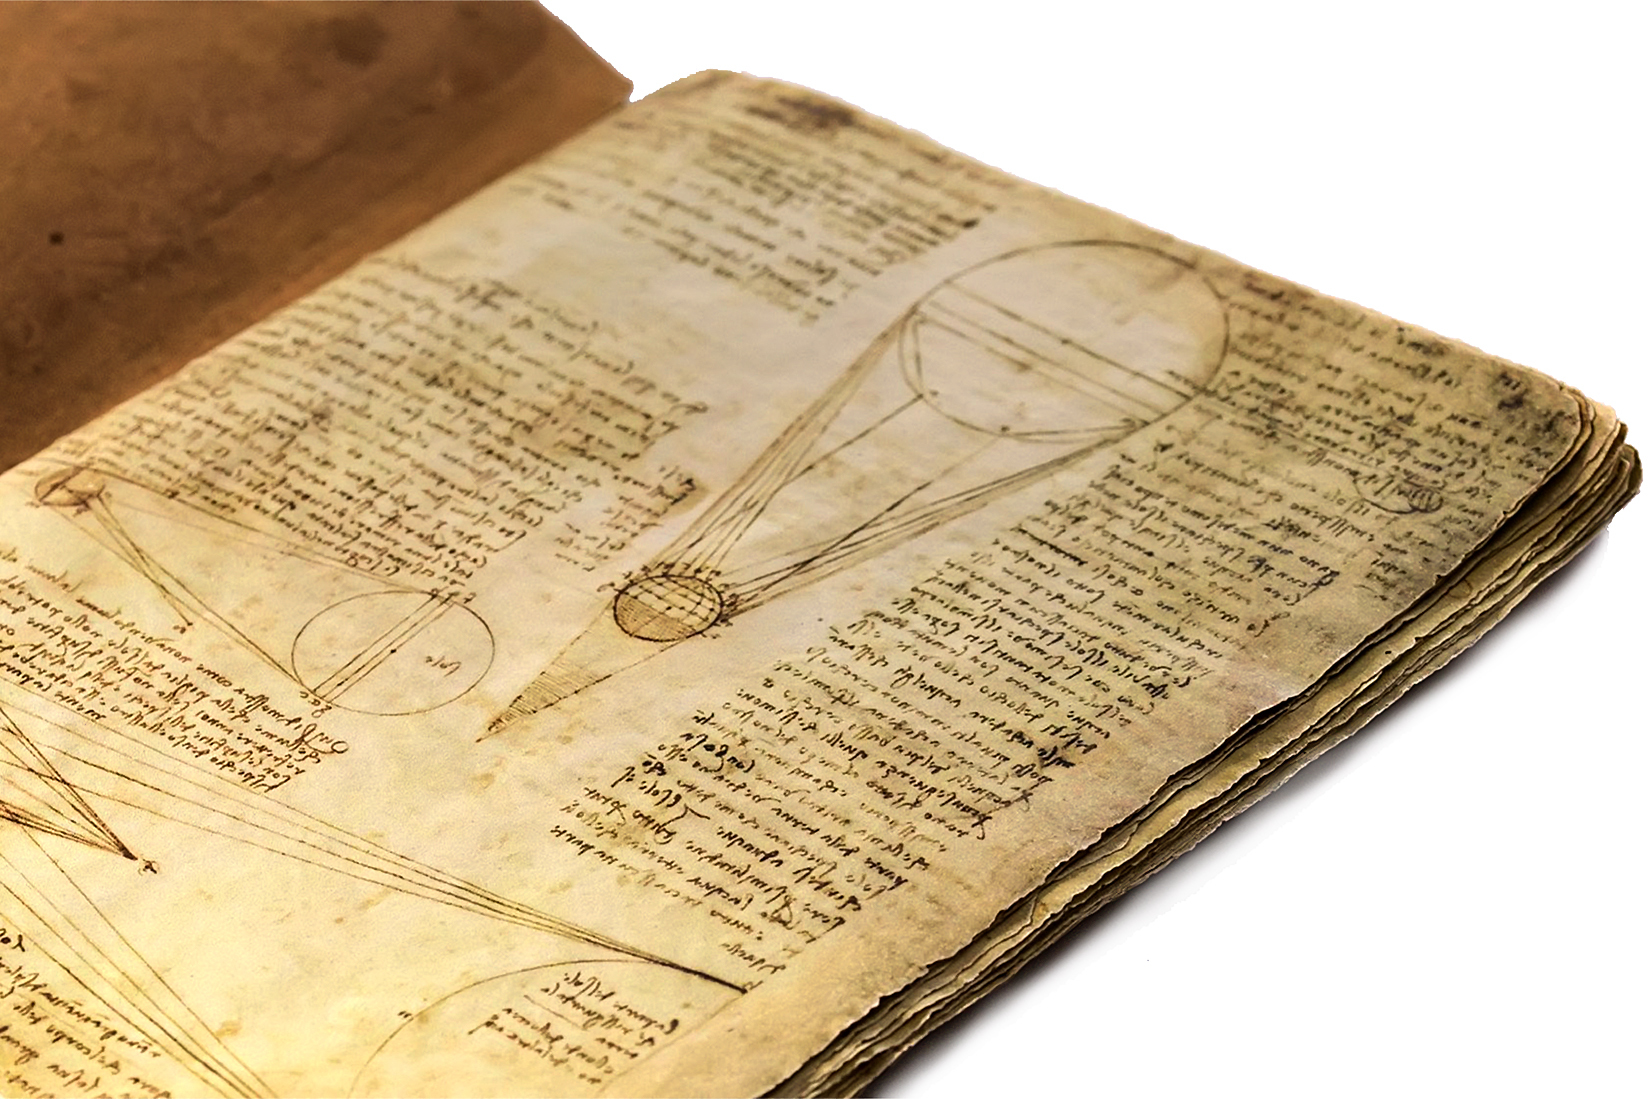 История одного шедевра: «Лестерский кодекс» Леонардо да Винчи – бесценный образец уникальной научно-исследовательской деятельности и чудо мысли